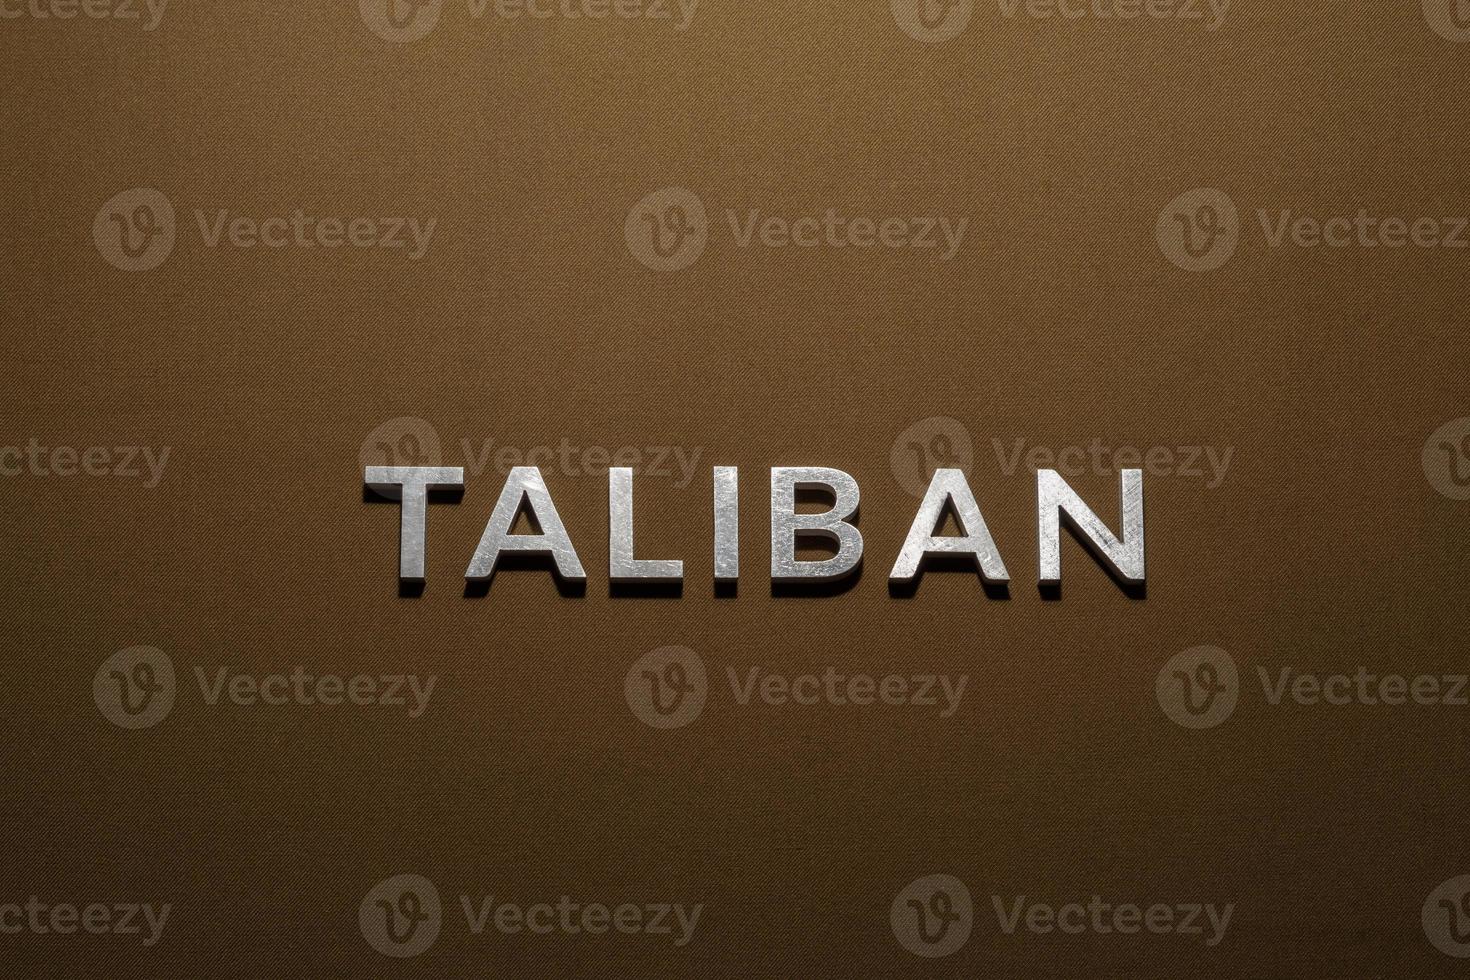 il parola taliban di cui con argento metallo lettere su ruvido abbronzatura cachi tela tessuto foto